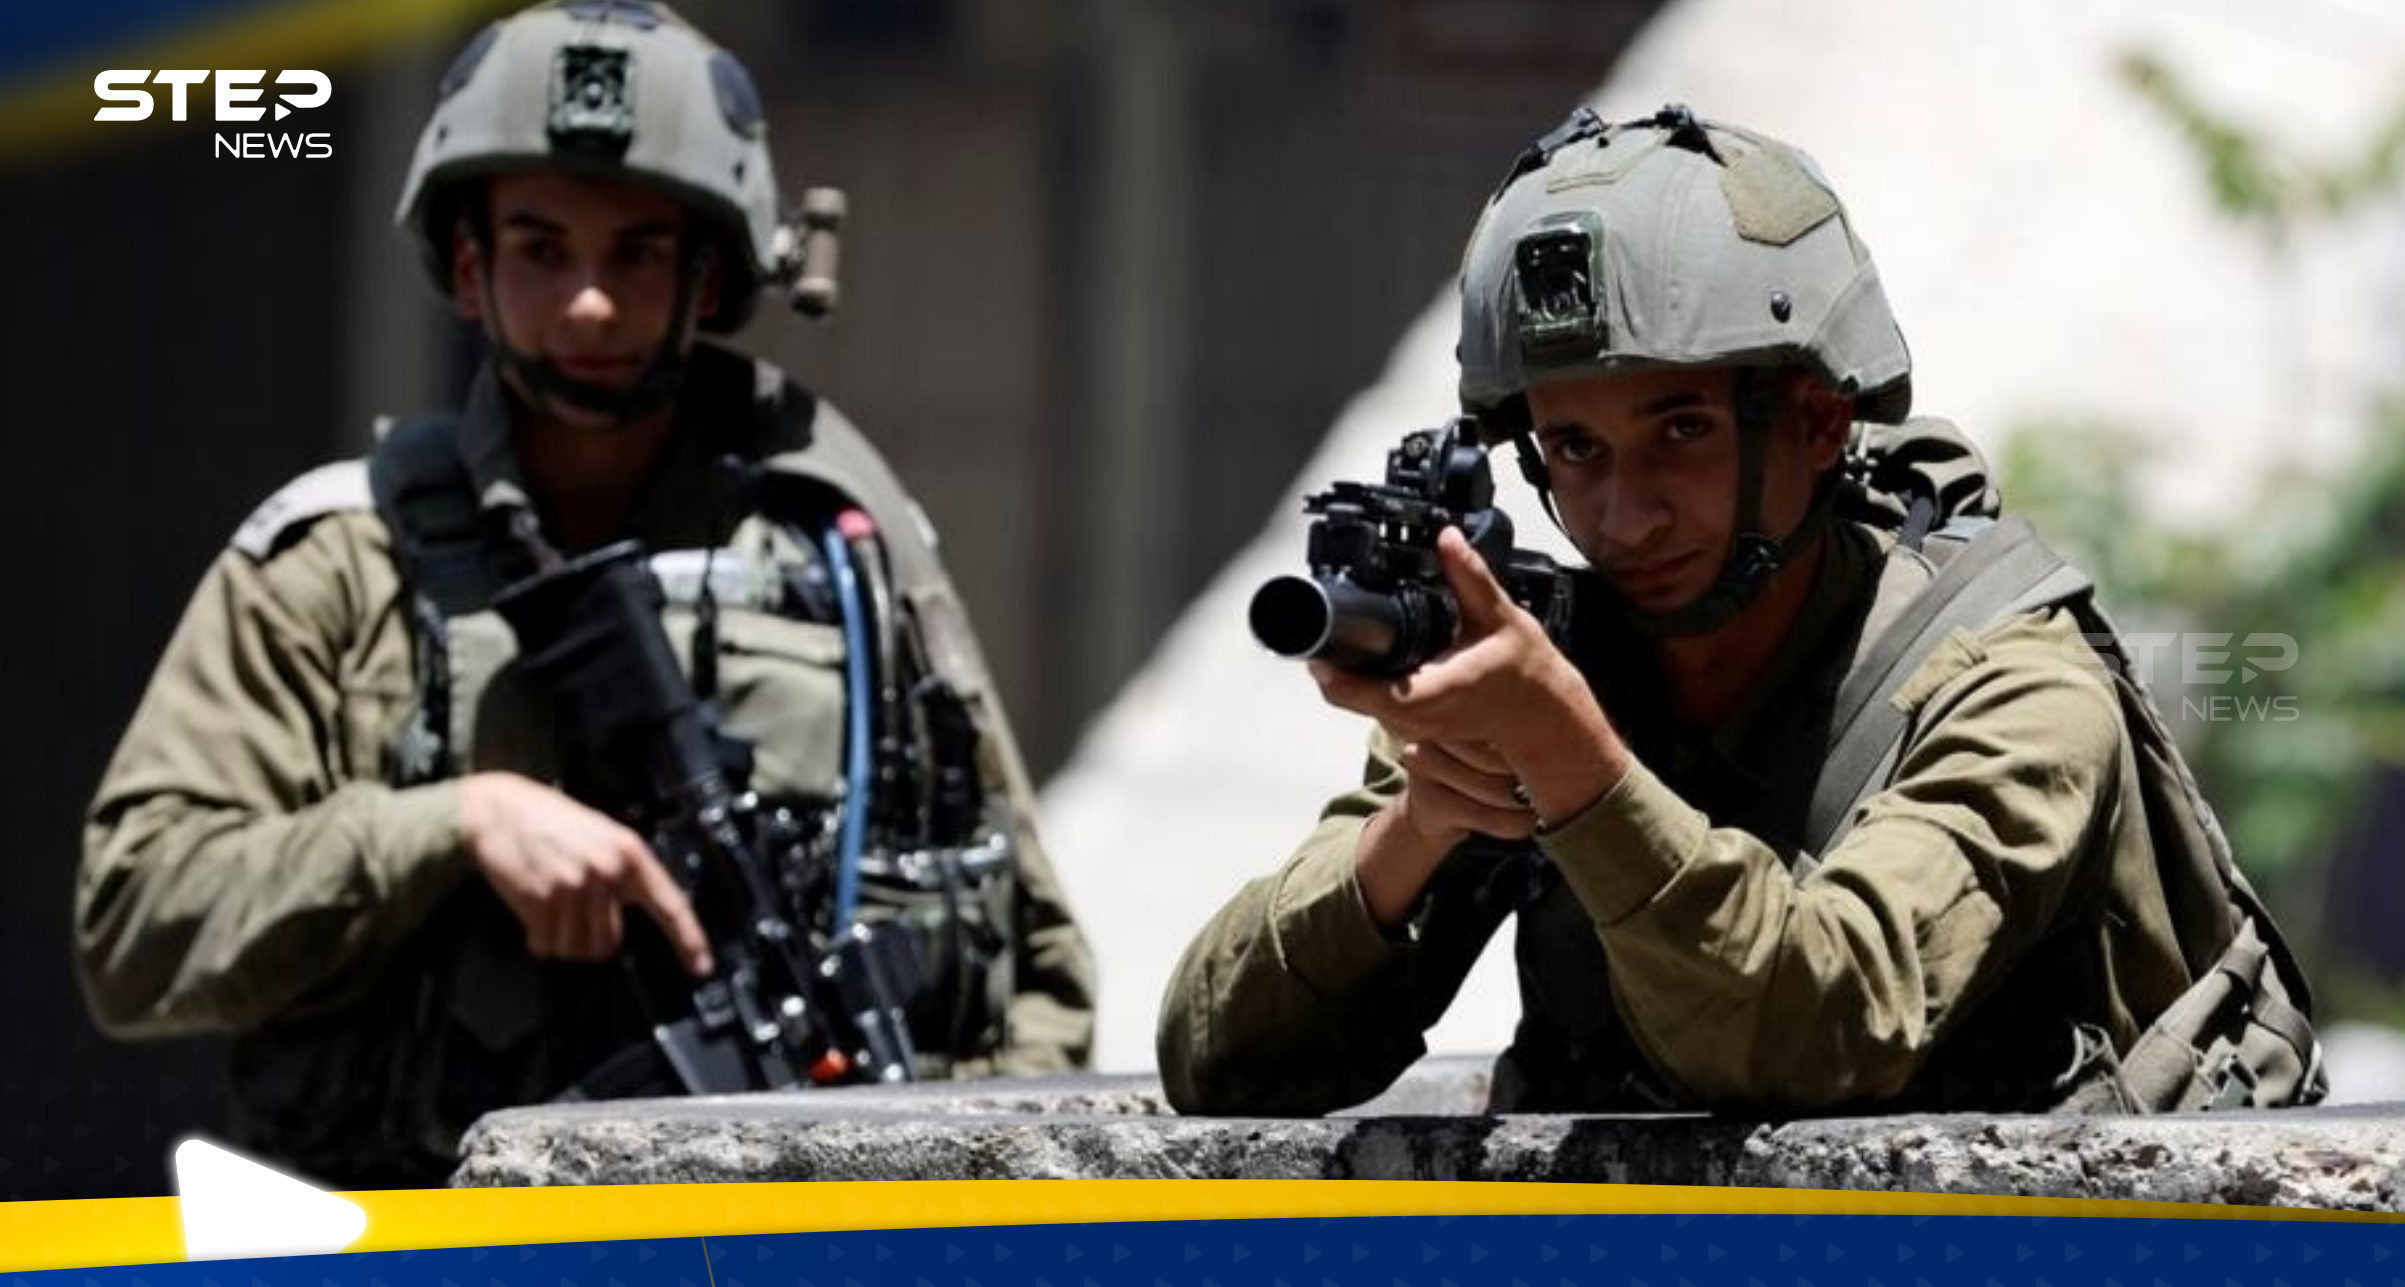 إسرائيل تشكل فريقًا بمهمة خاصة في الضفة الغربية خوفاً من تكرار سيناريو غزة